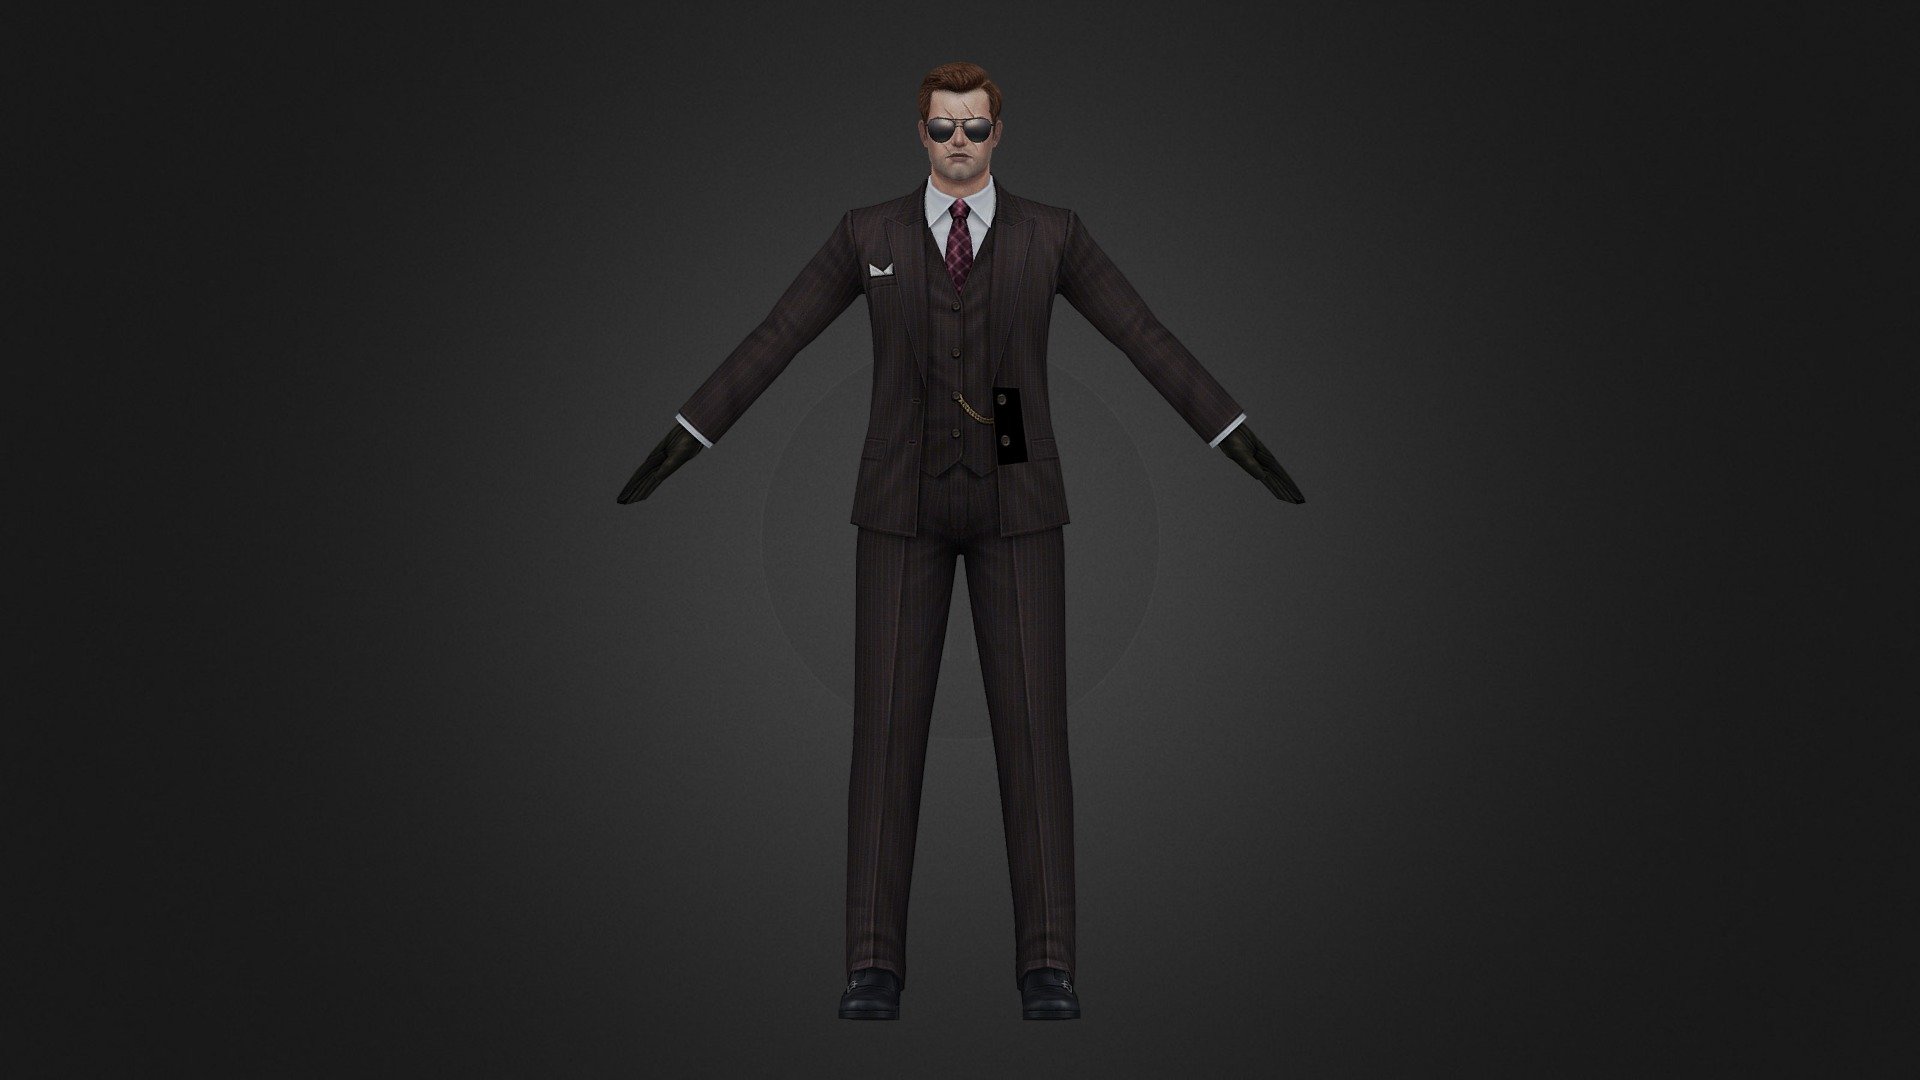 Yigit Suit - 3D model by Dimac 3d model